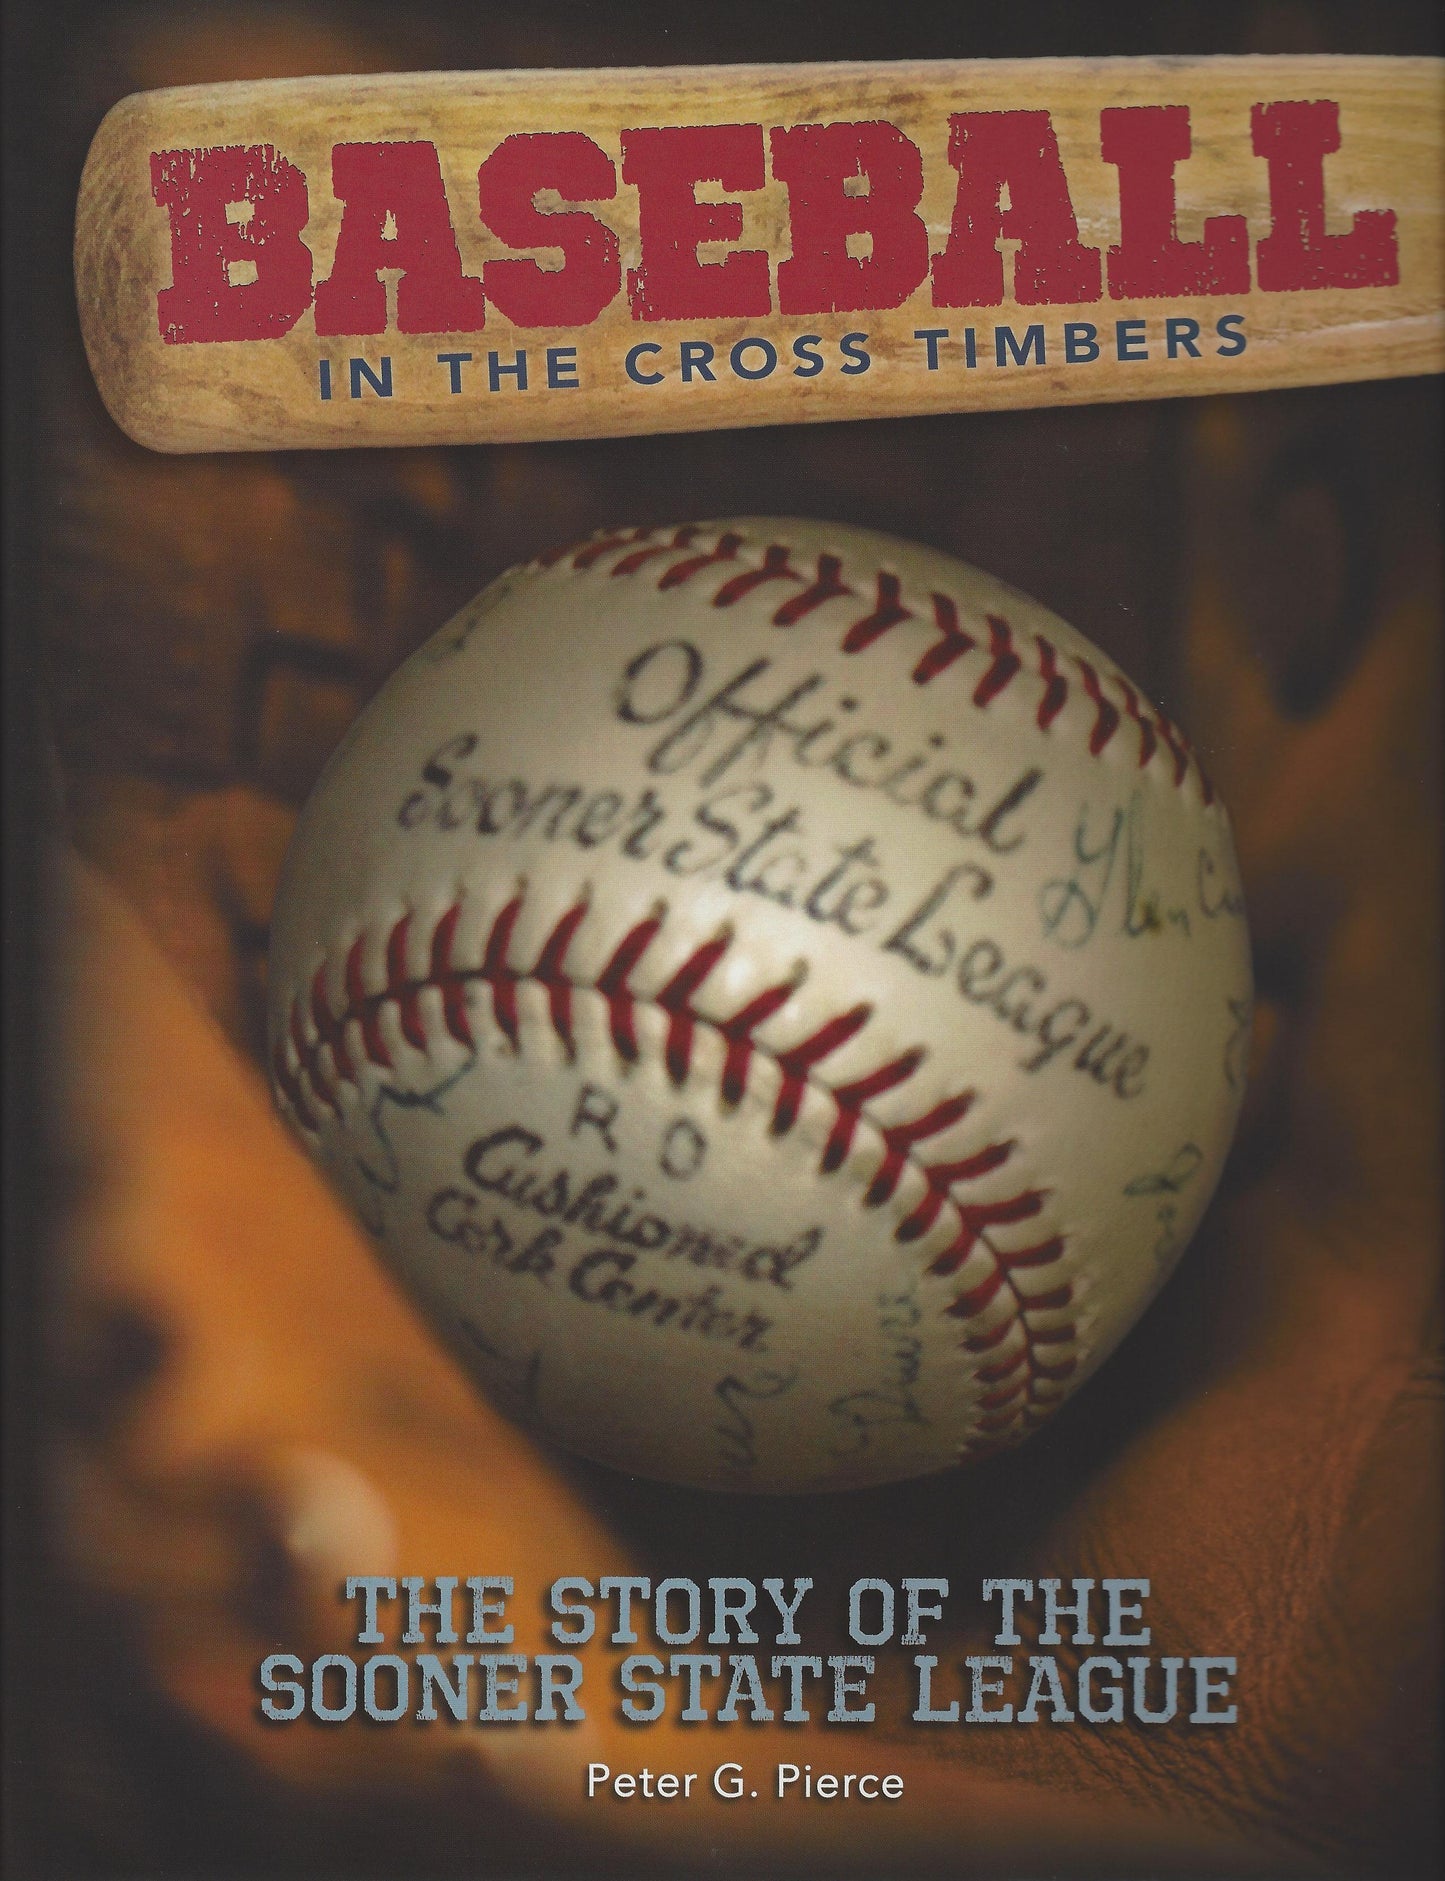 Baseball in the Cross Timbers